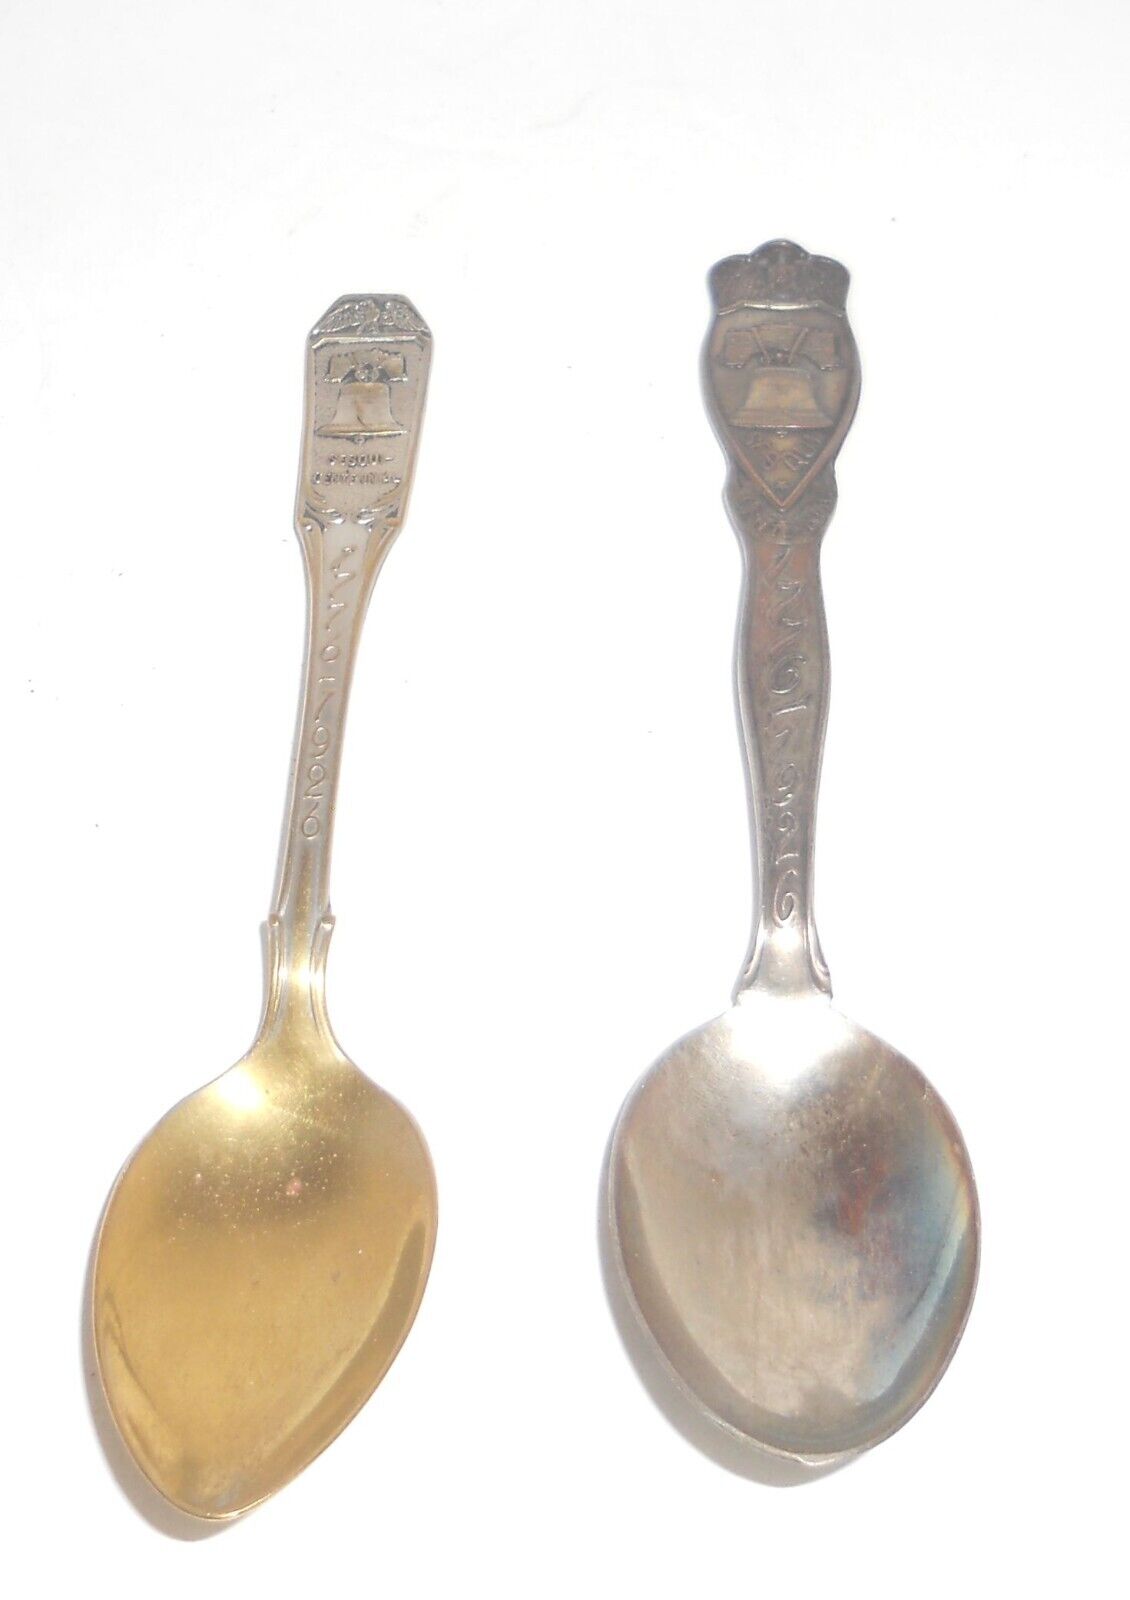 Antique 1776-1926 Sesquicentennial Exposition Souvenirs 2 Different Spoons